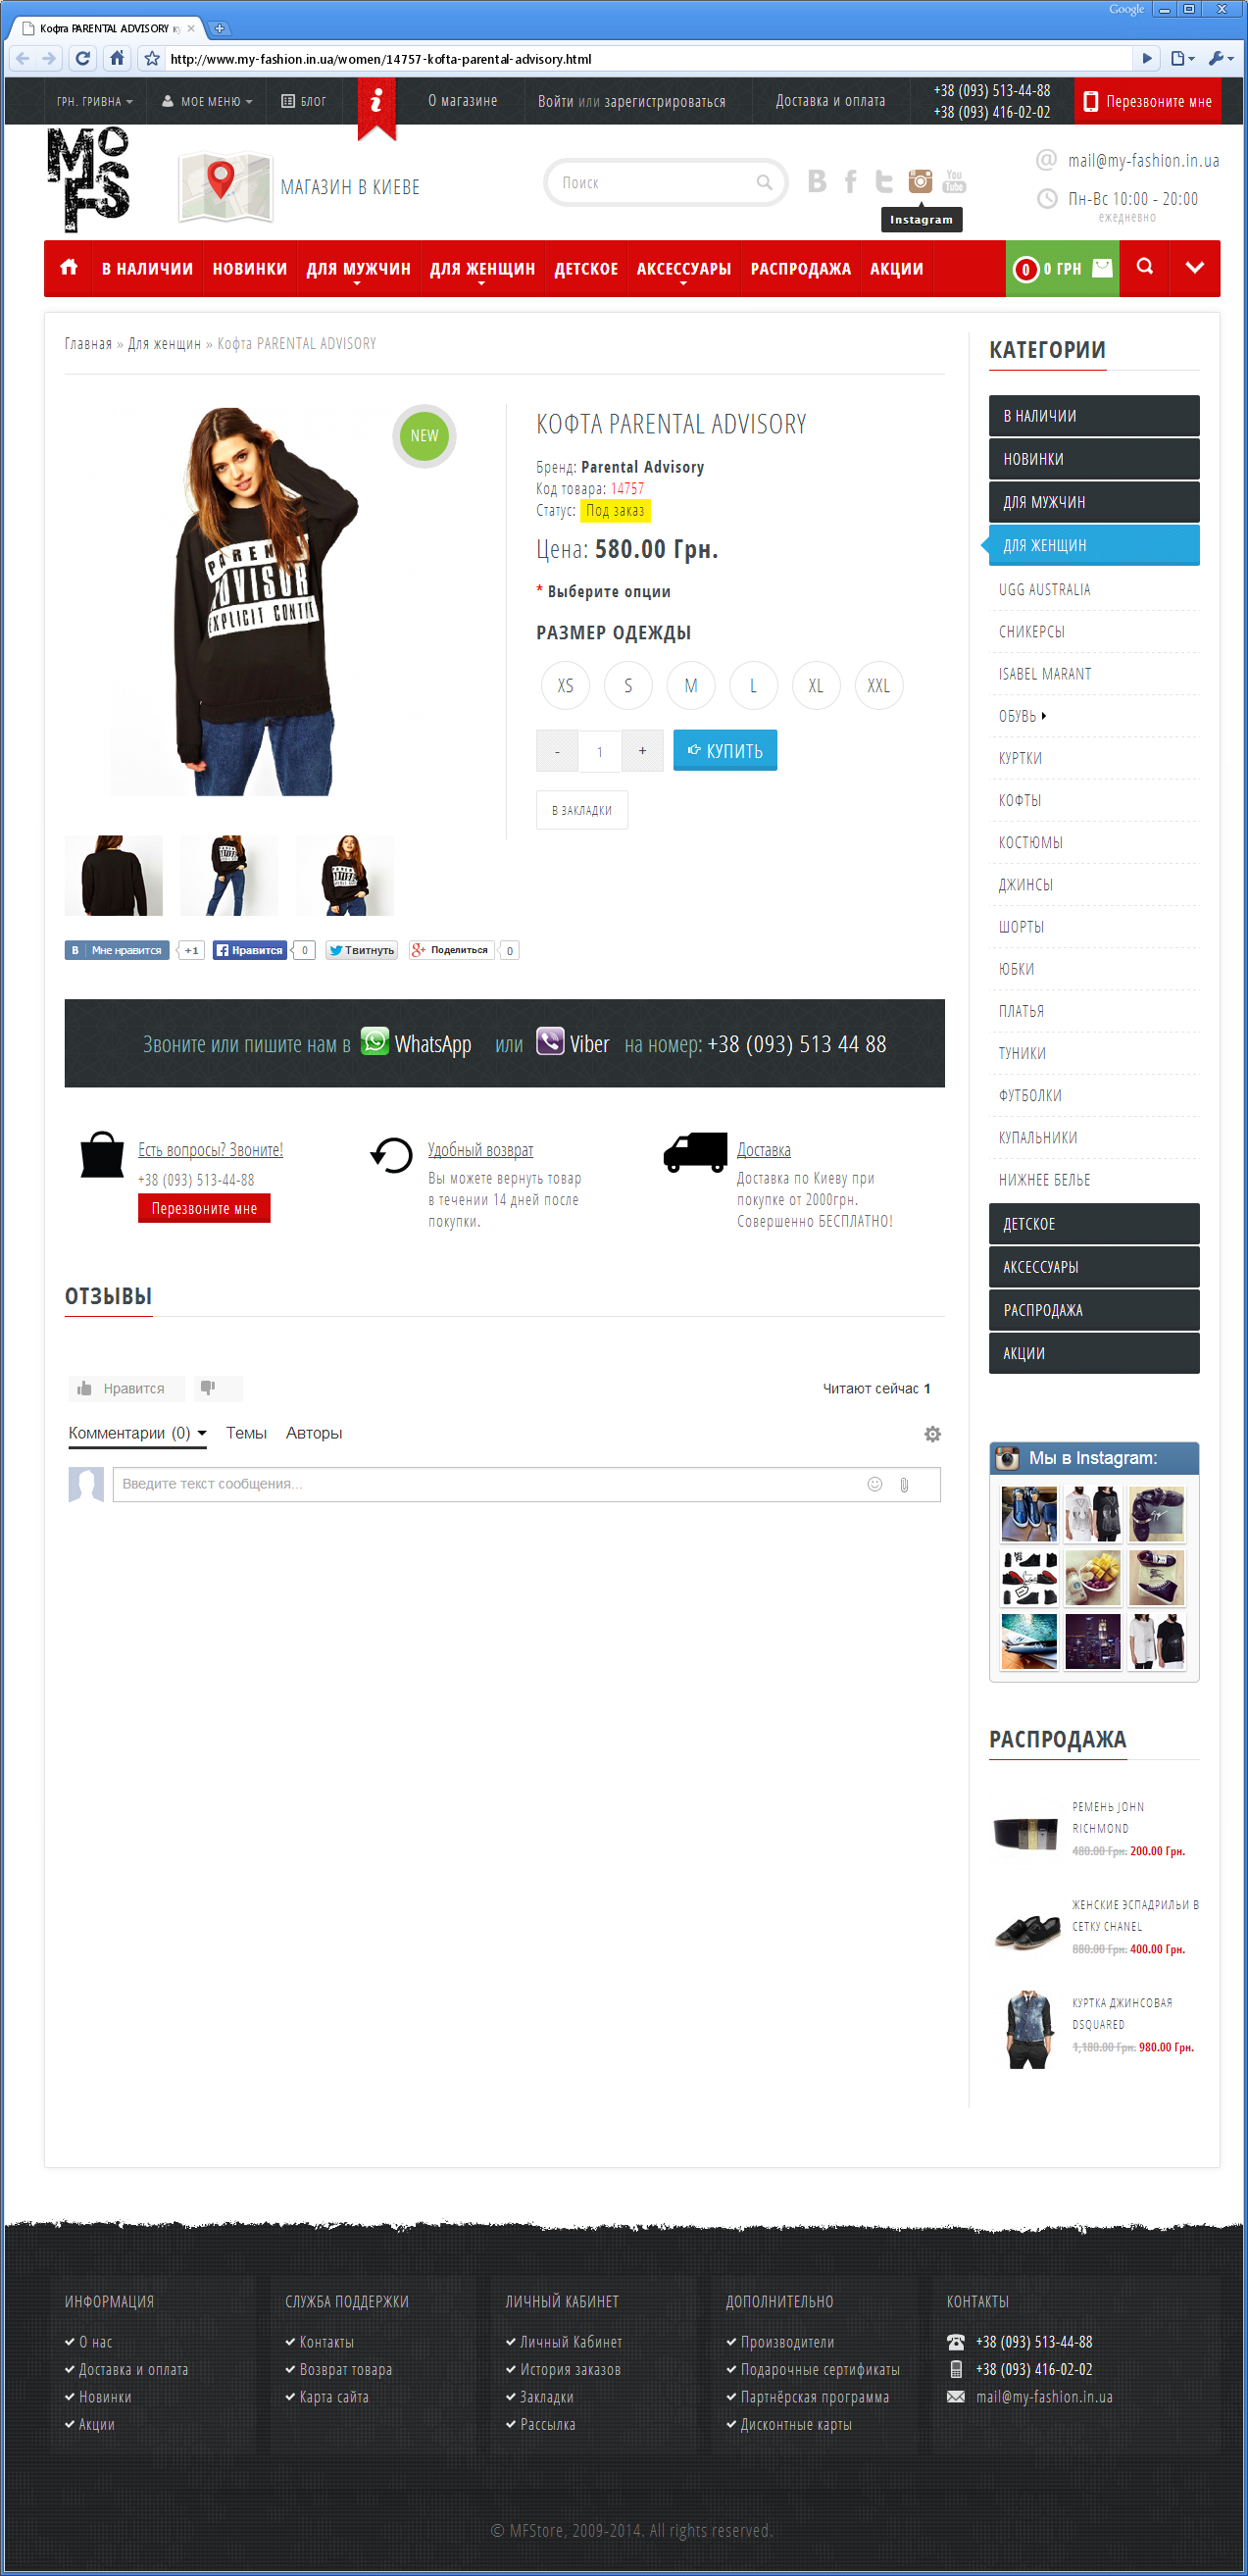 Редизайн інтернет-магазину елітного молодіжного одягу | проекти Evergreen 13